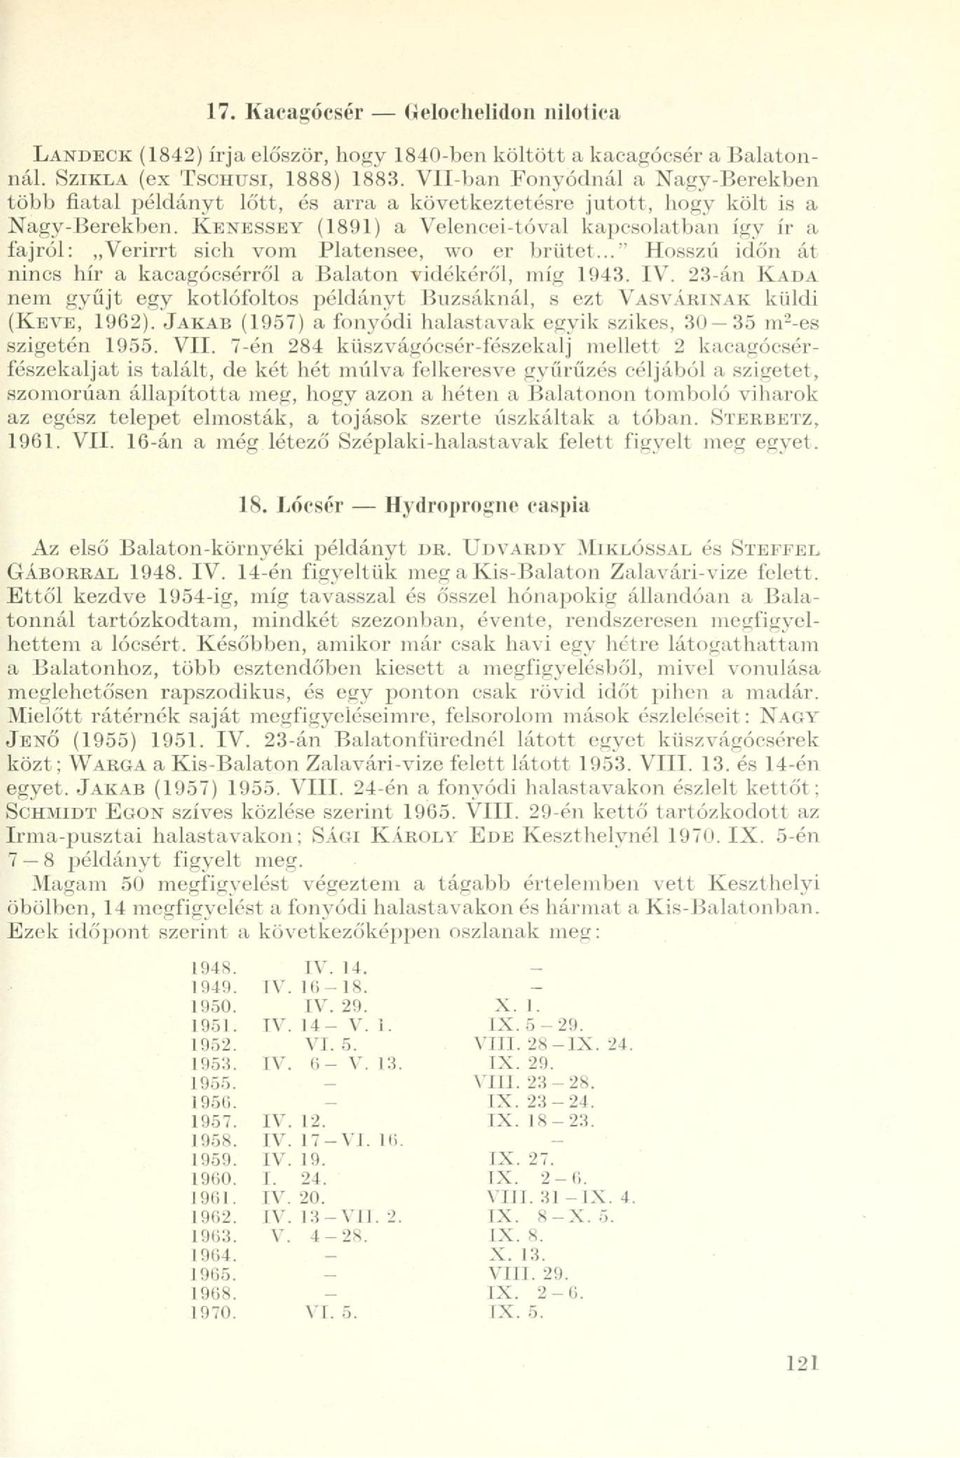 KENESSEY (1891) a Velencei-tóval kapcsolatban így ír a fajról: Verirrt sich vom Platensee, wo er brütet..." Hosszú időn át nincs hír a kacagócsórről a Balaton vidékéről, míg 1943. IV.